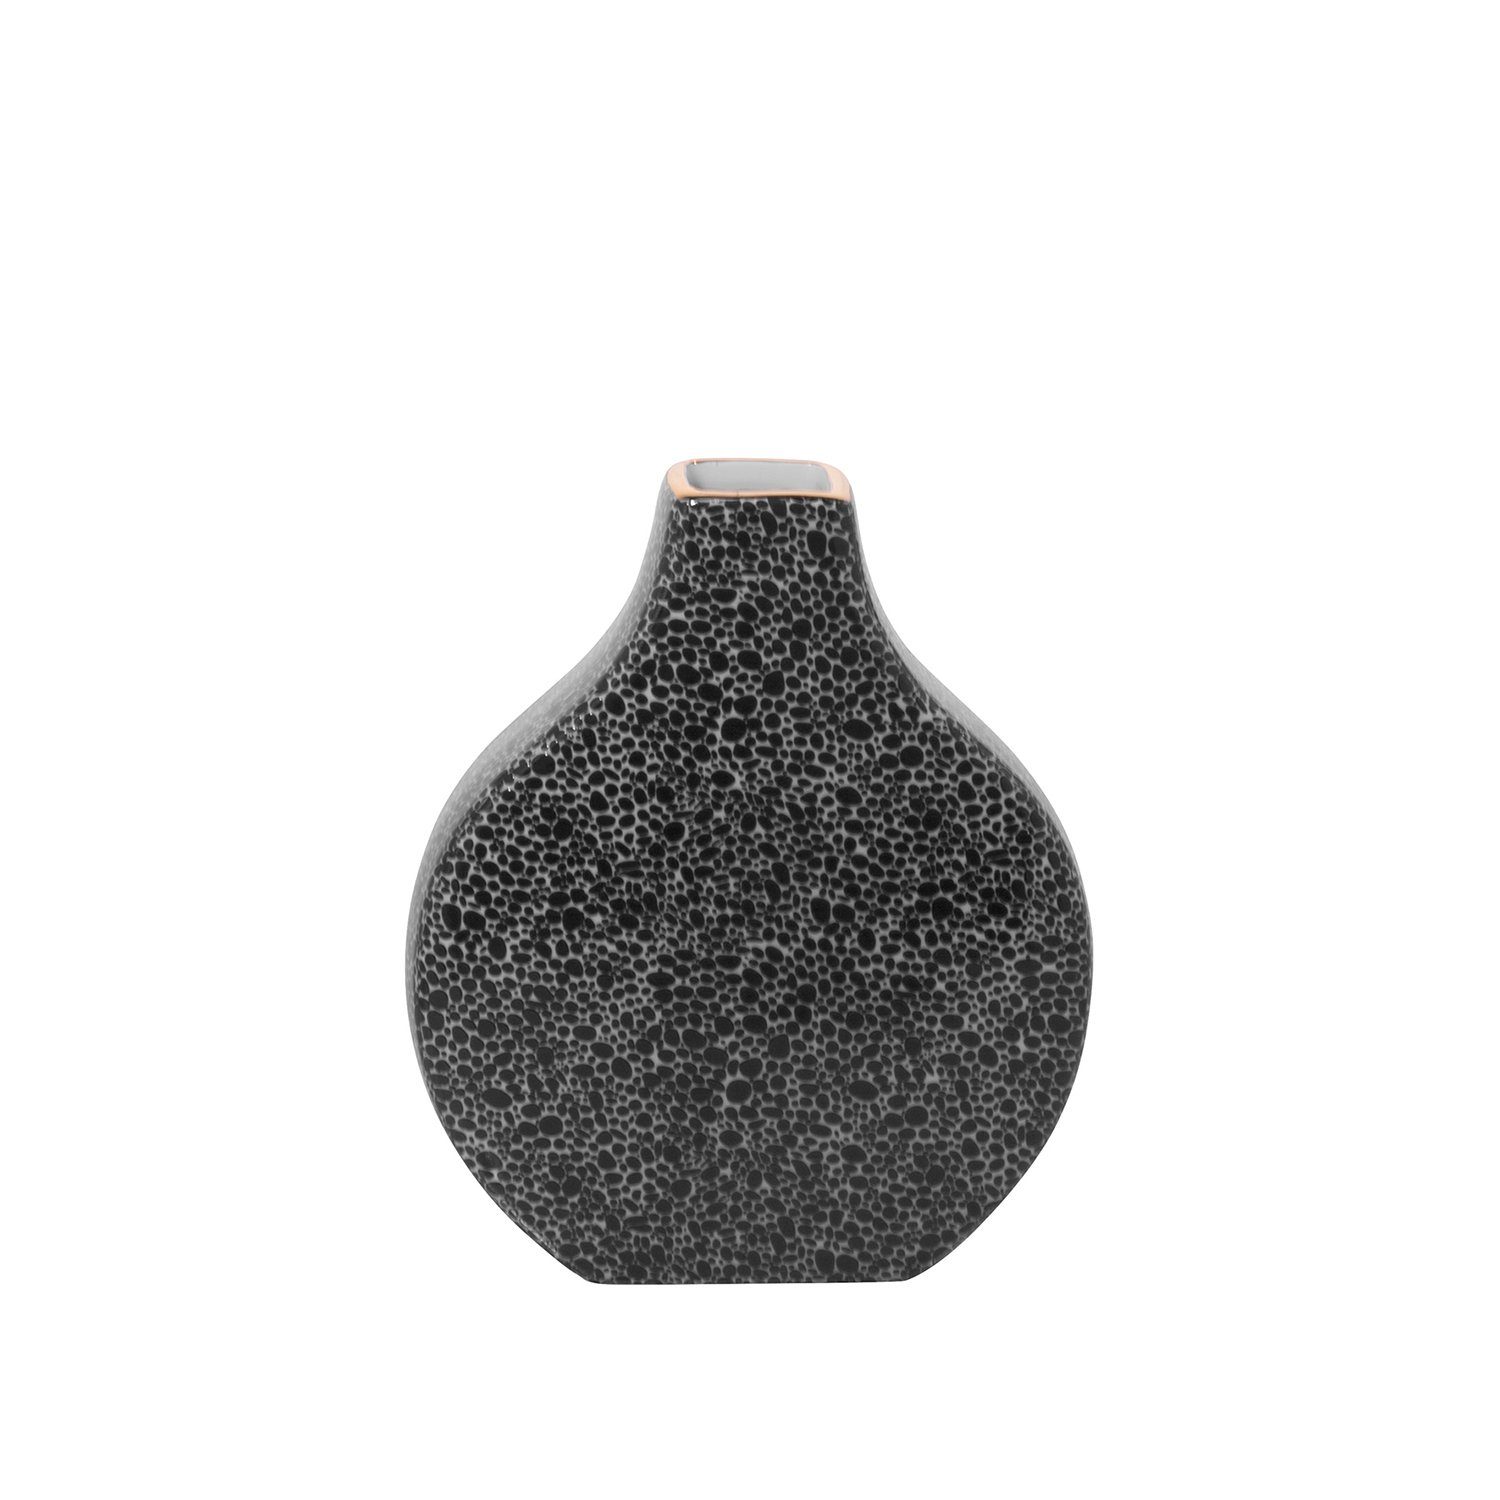 Fink Dekovase Vase MINTA - schwarz-weiß - Porzellan - H.23cm x B.19,5cm x T.6cm, Handbemalter goldfarbener Rand - Durchmesser Öffnung ca. 4x4,5 cm